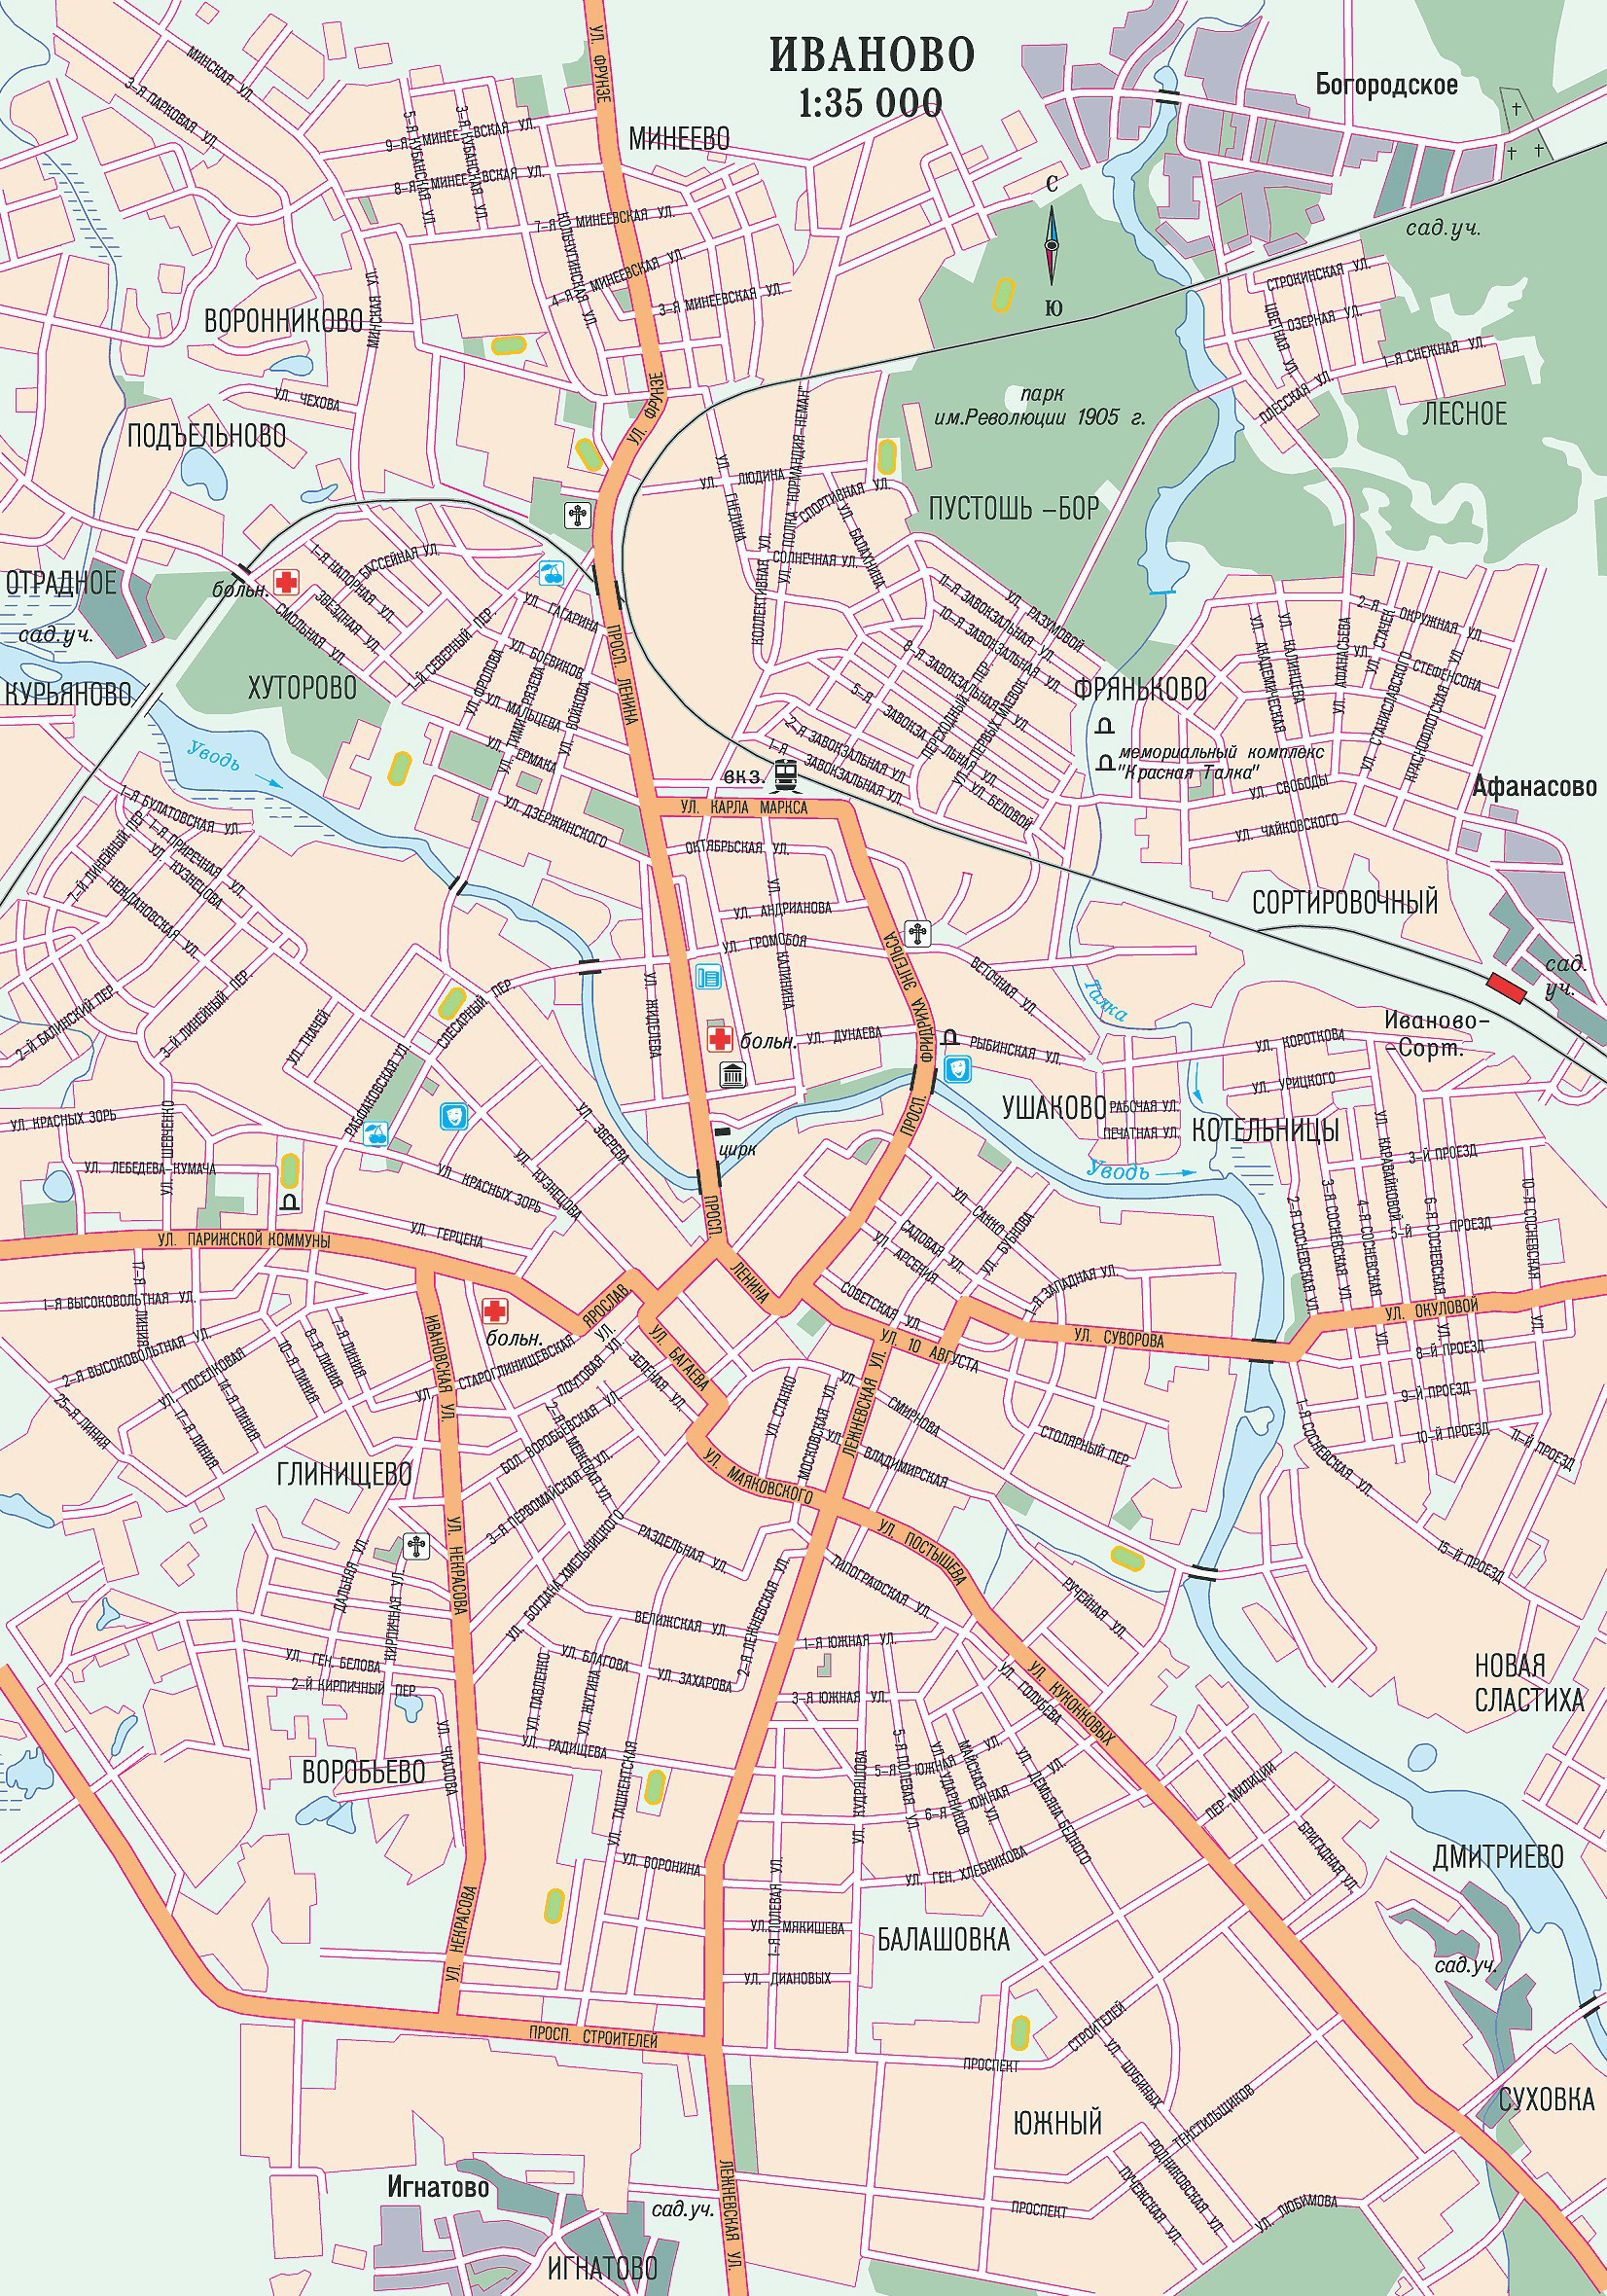 Большая подробная карта автомобильных дорог Иваново с названиями улиц. Картаавтодорог г. Иваново с названиями улиц